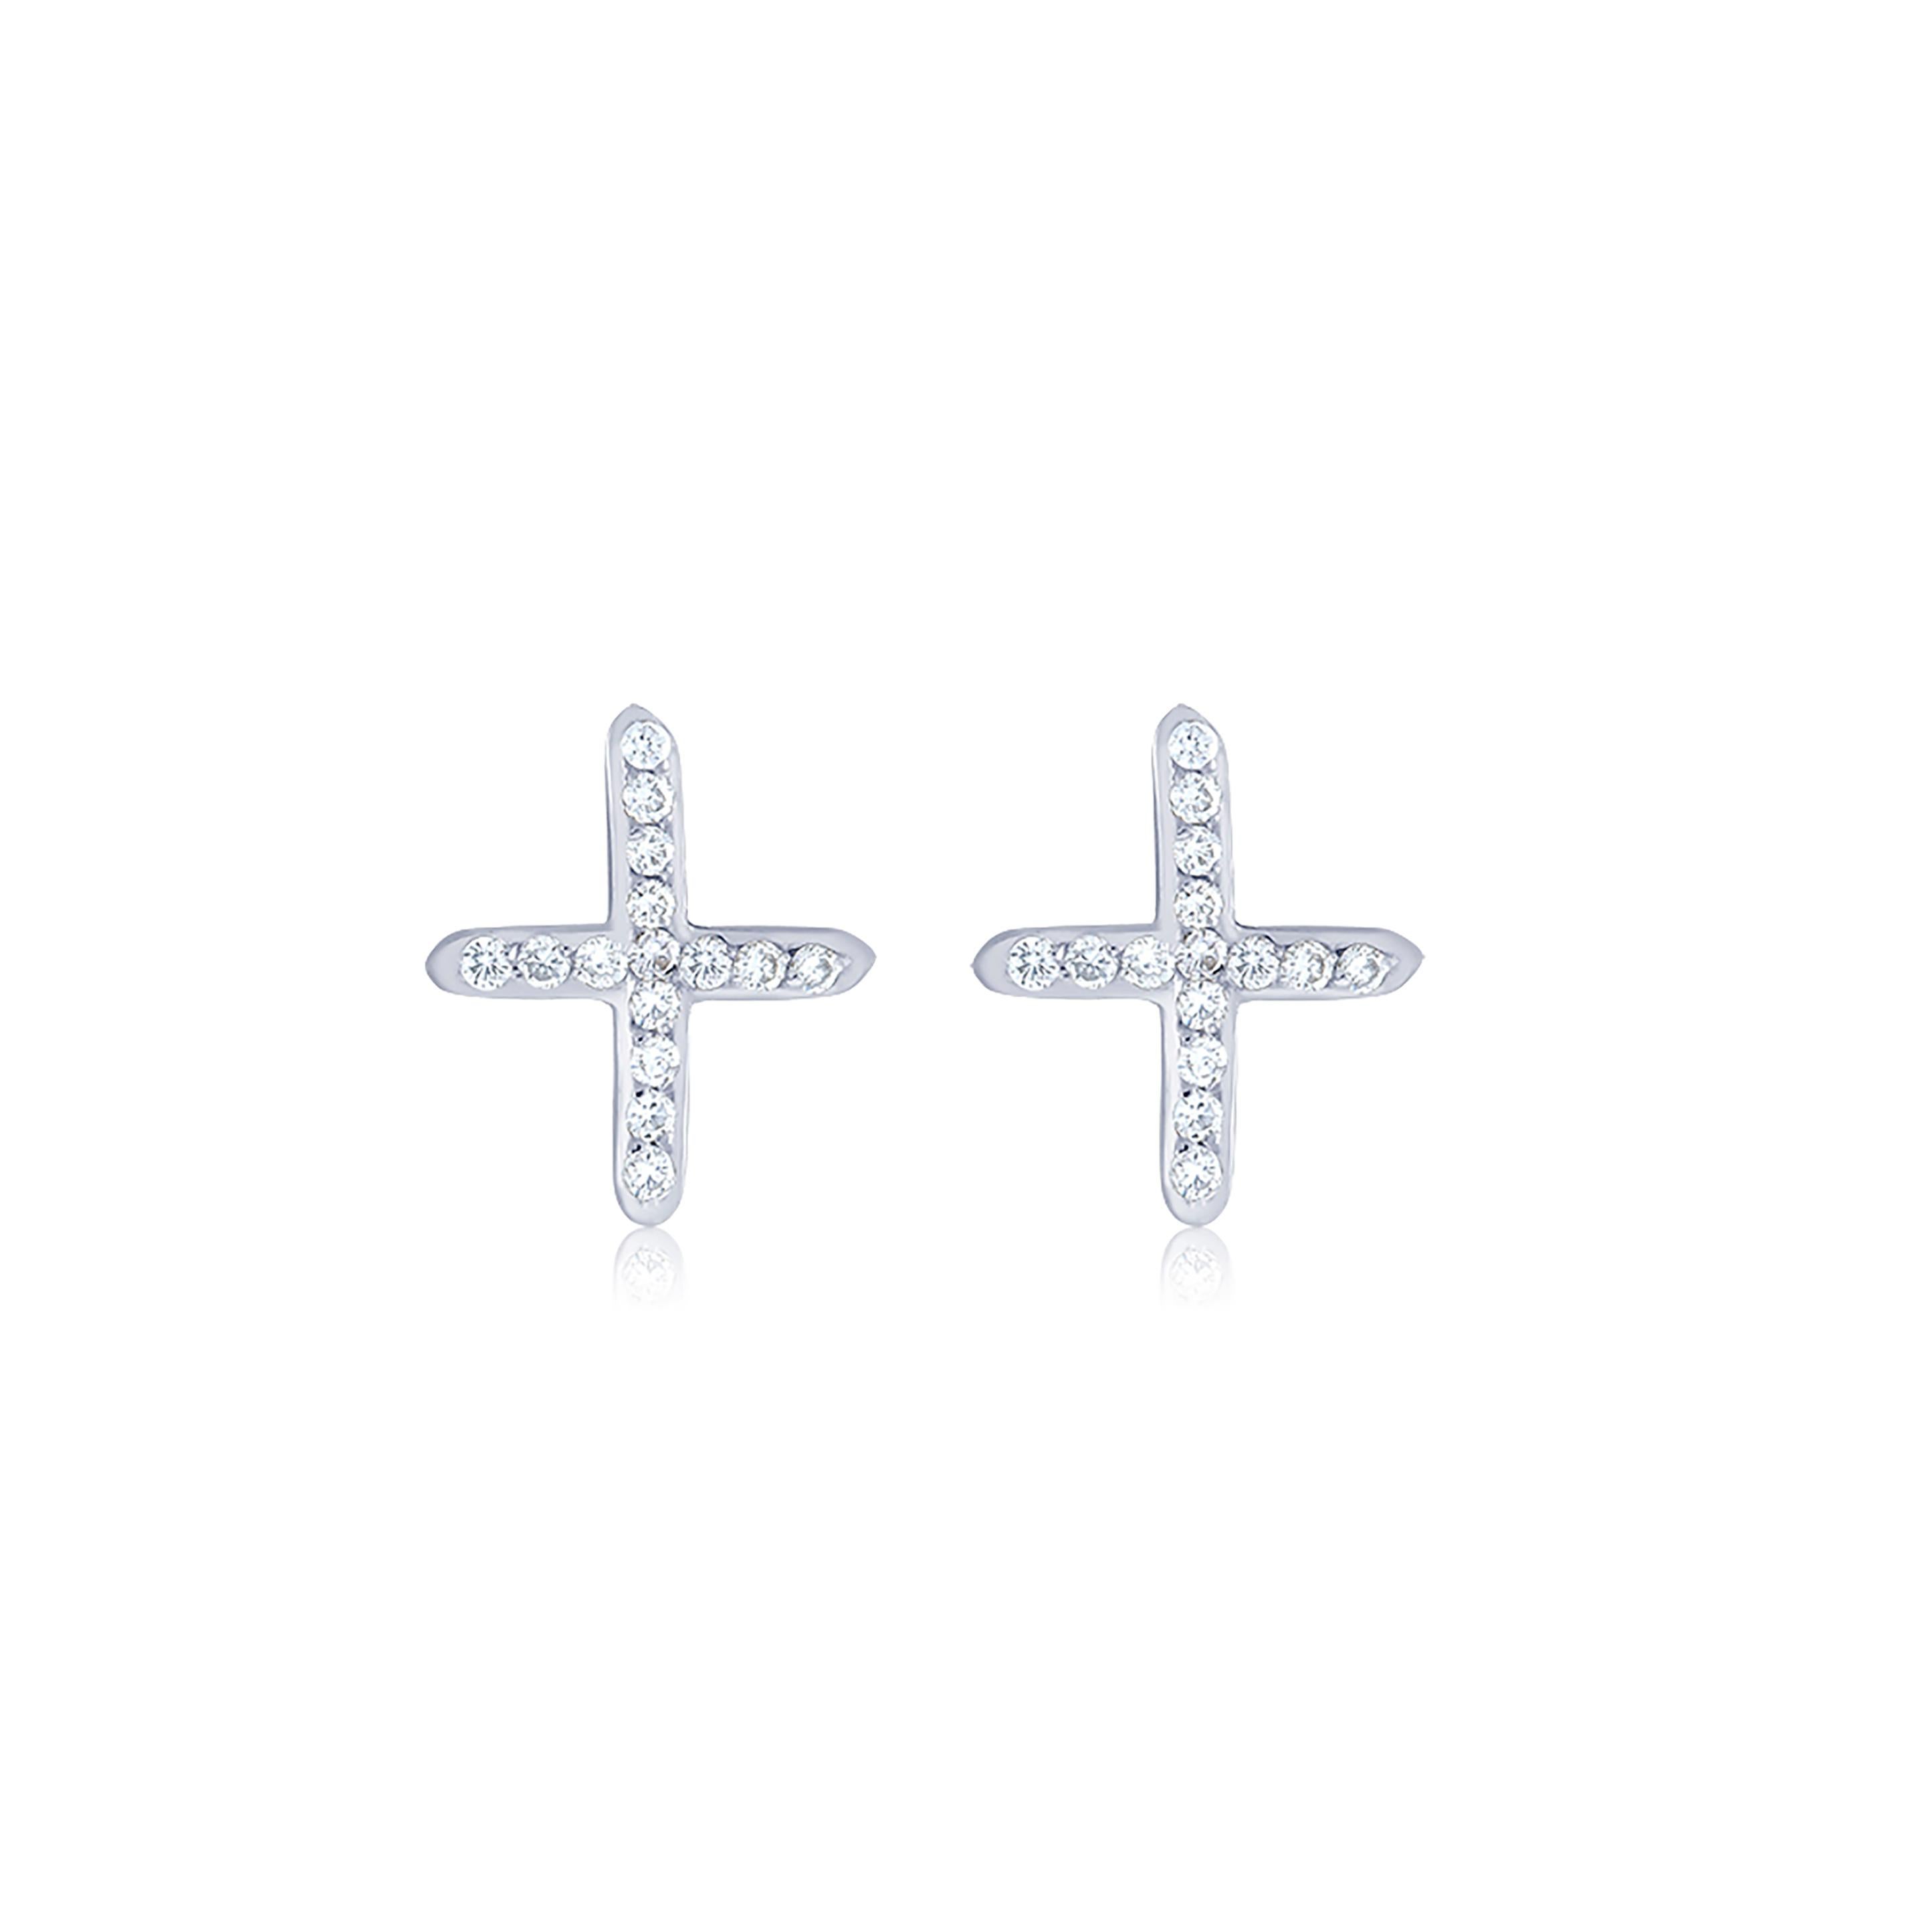 White Gold Diamond Cross Stud Earrings Measuring 0.40 Inch für Damen oder Herren